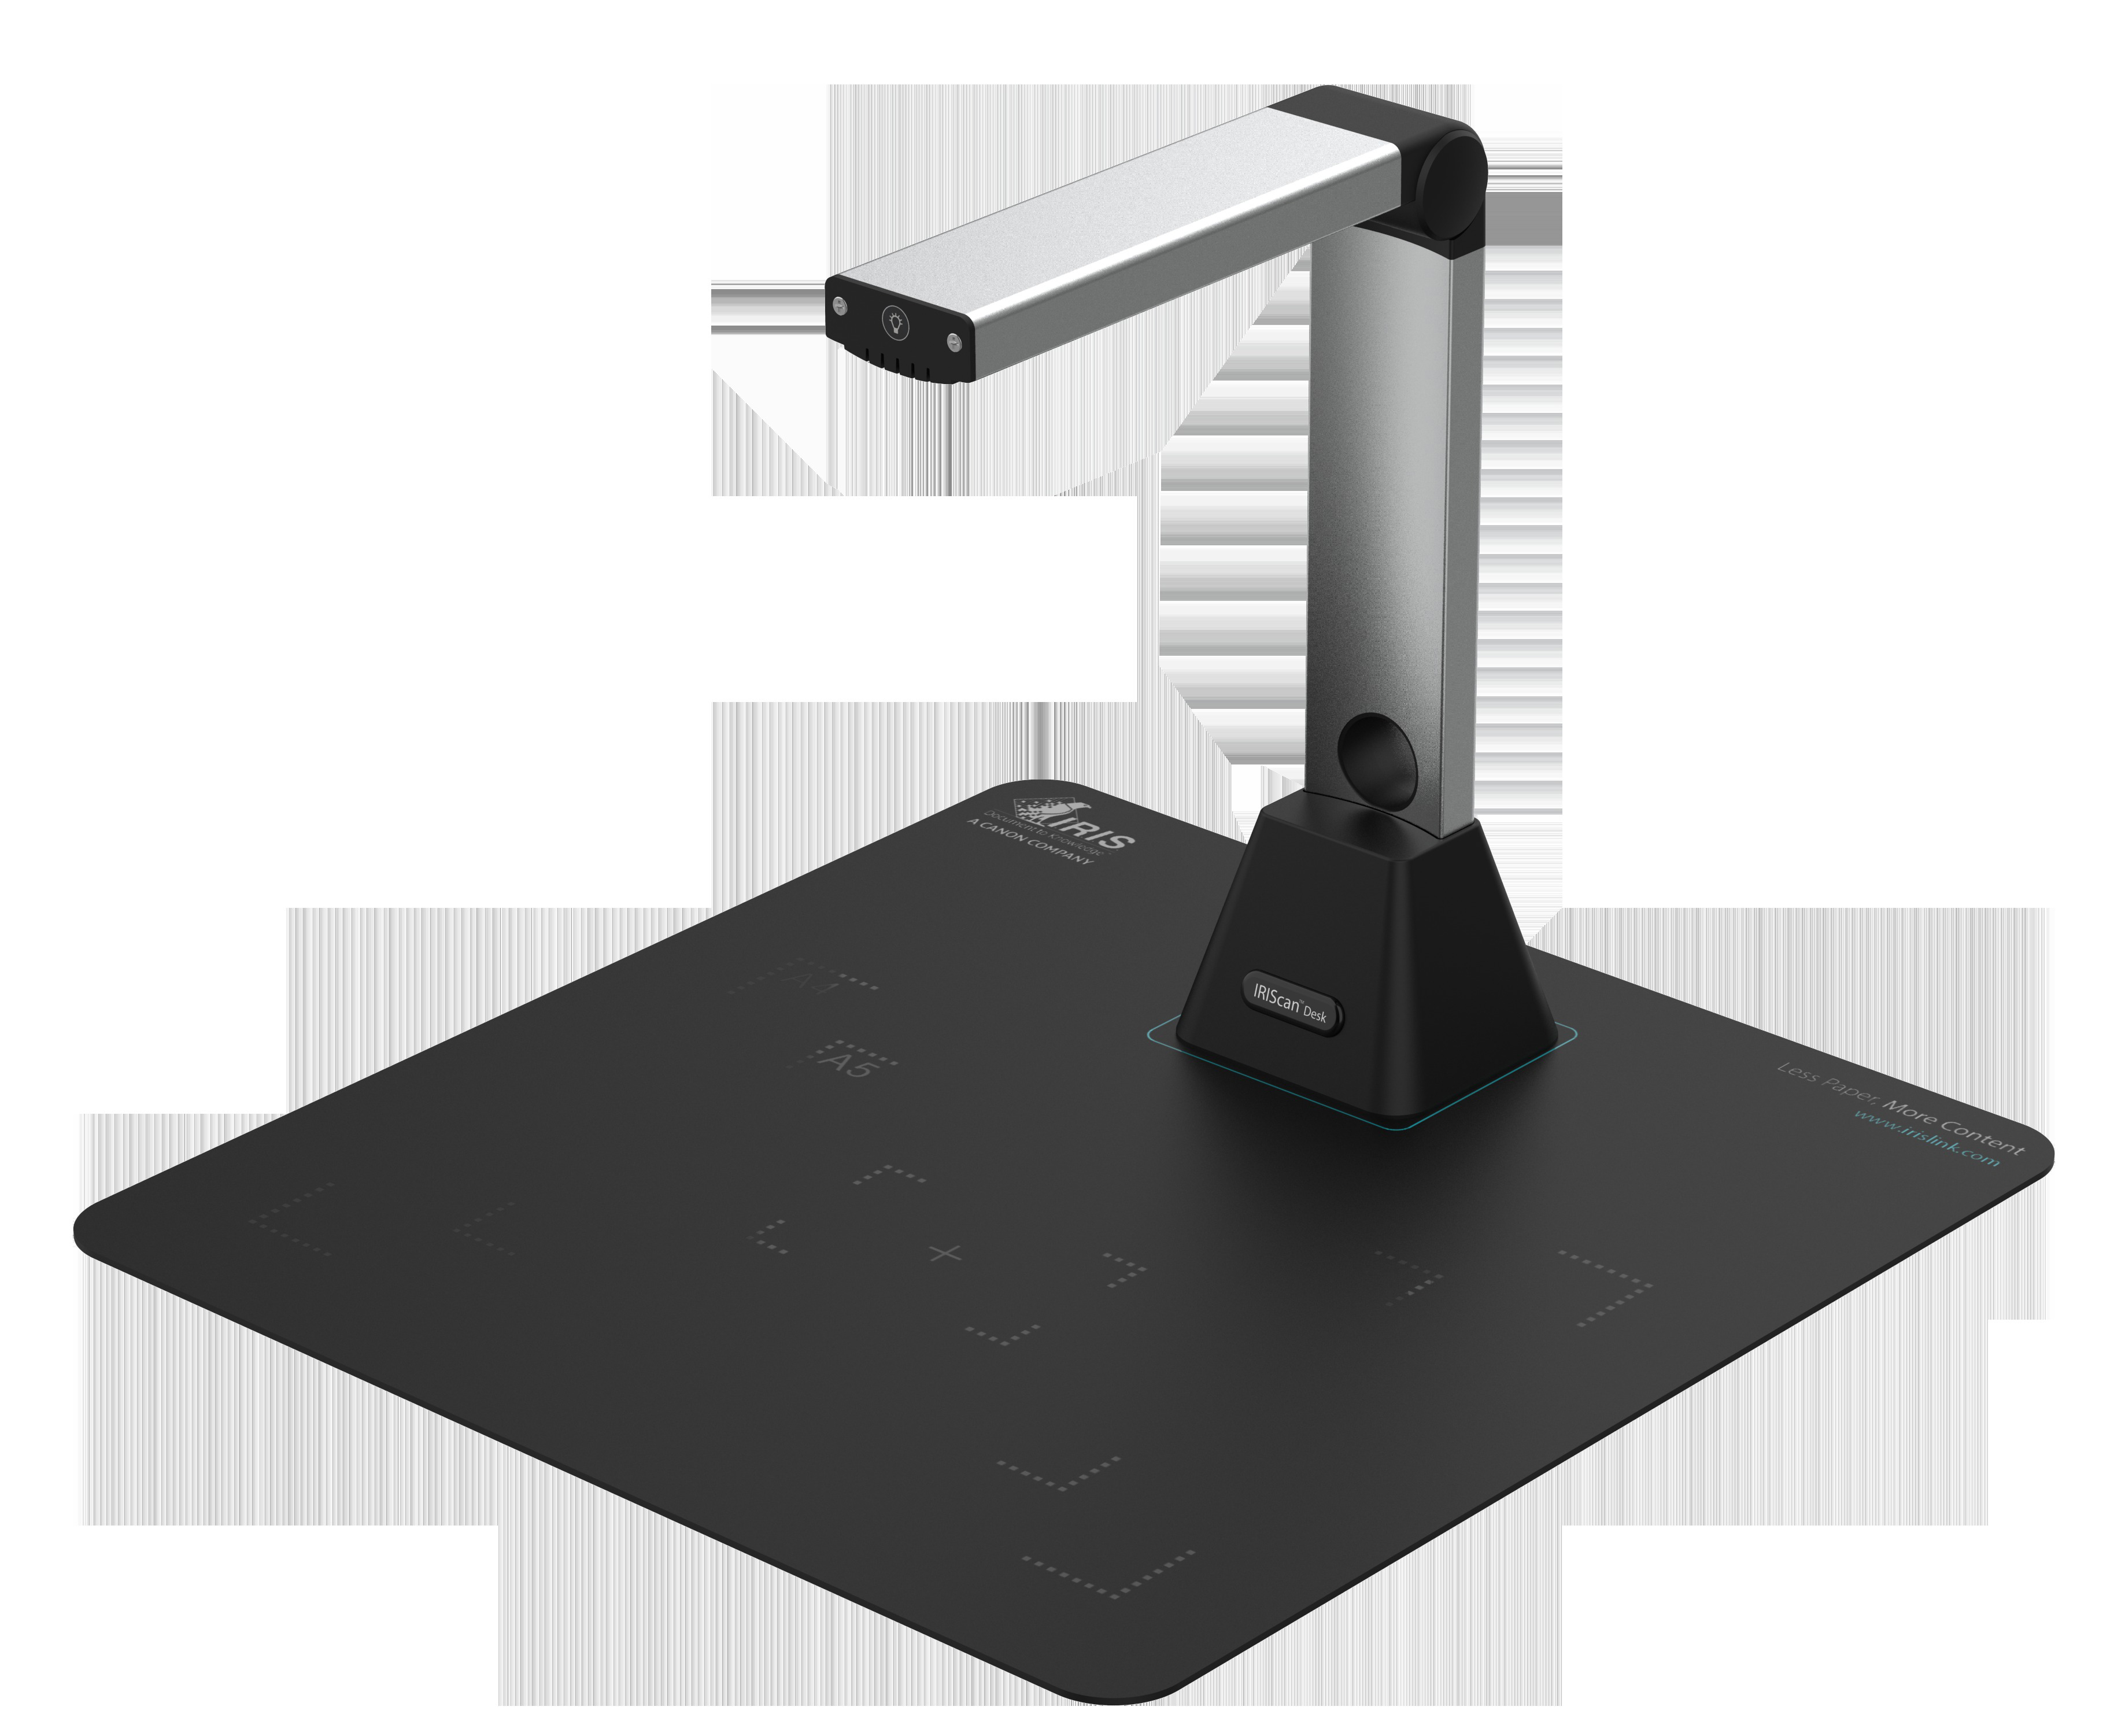 IRIS IRIScan Desk 5 Scanner Pixel, CMOS-Sensor , 2448 x Megapixel 3264 8